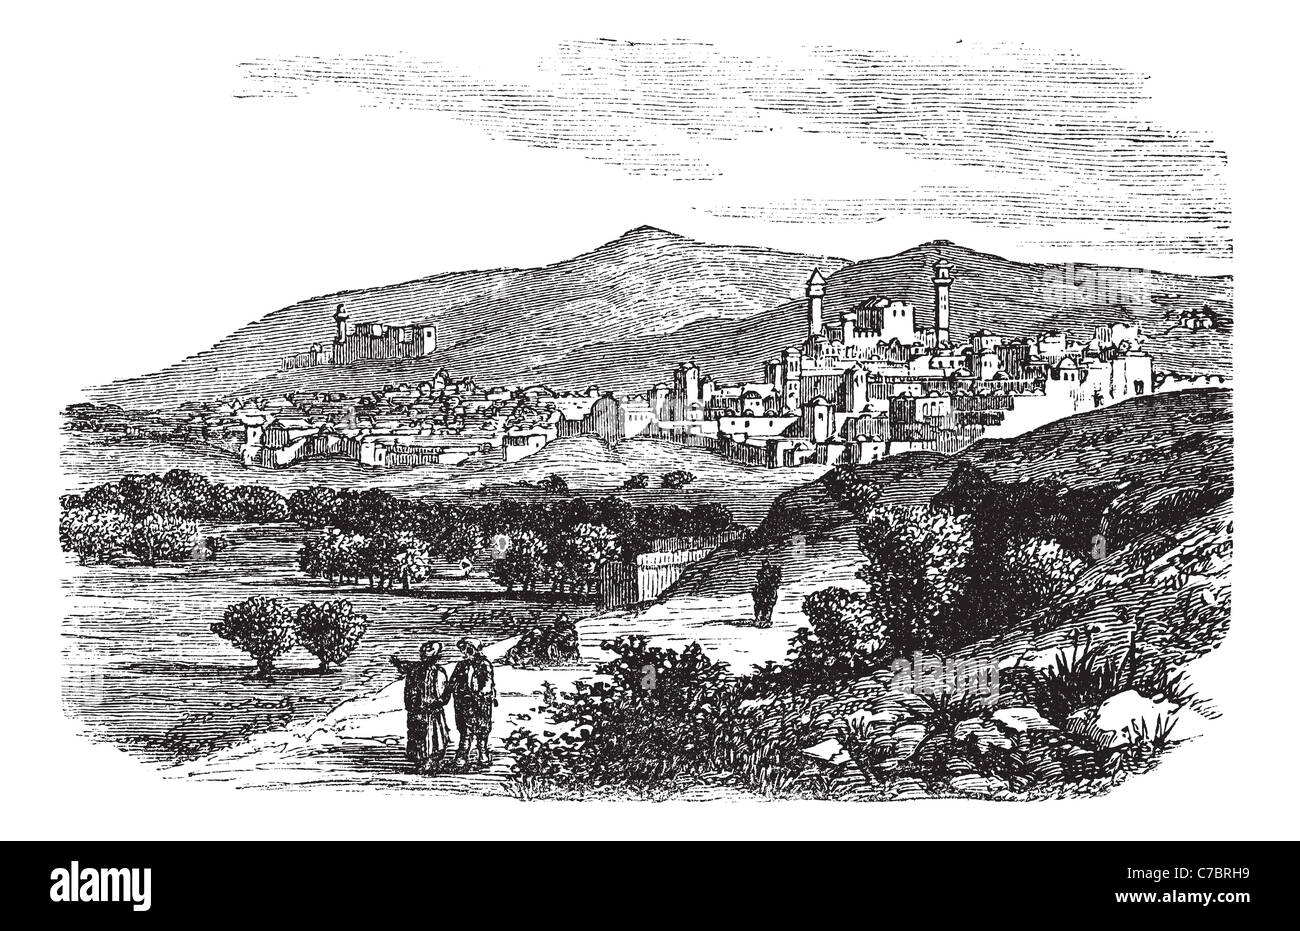 Belle vue sur les bâtiments et montagne à Hébron vintage la gravure. Vieille illustration gravée de bâtiments et versant de montagne Banque D'Images